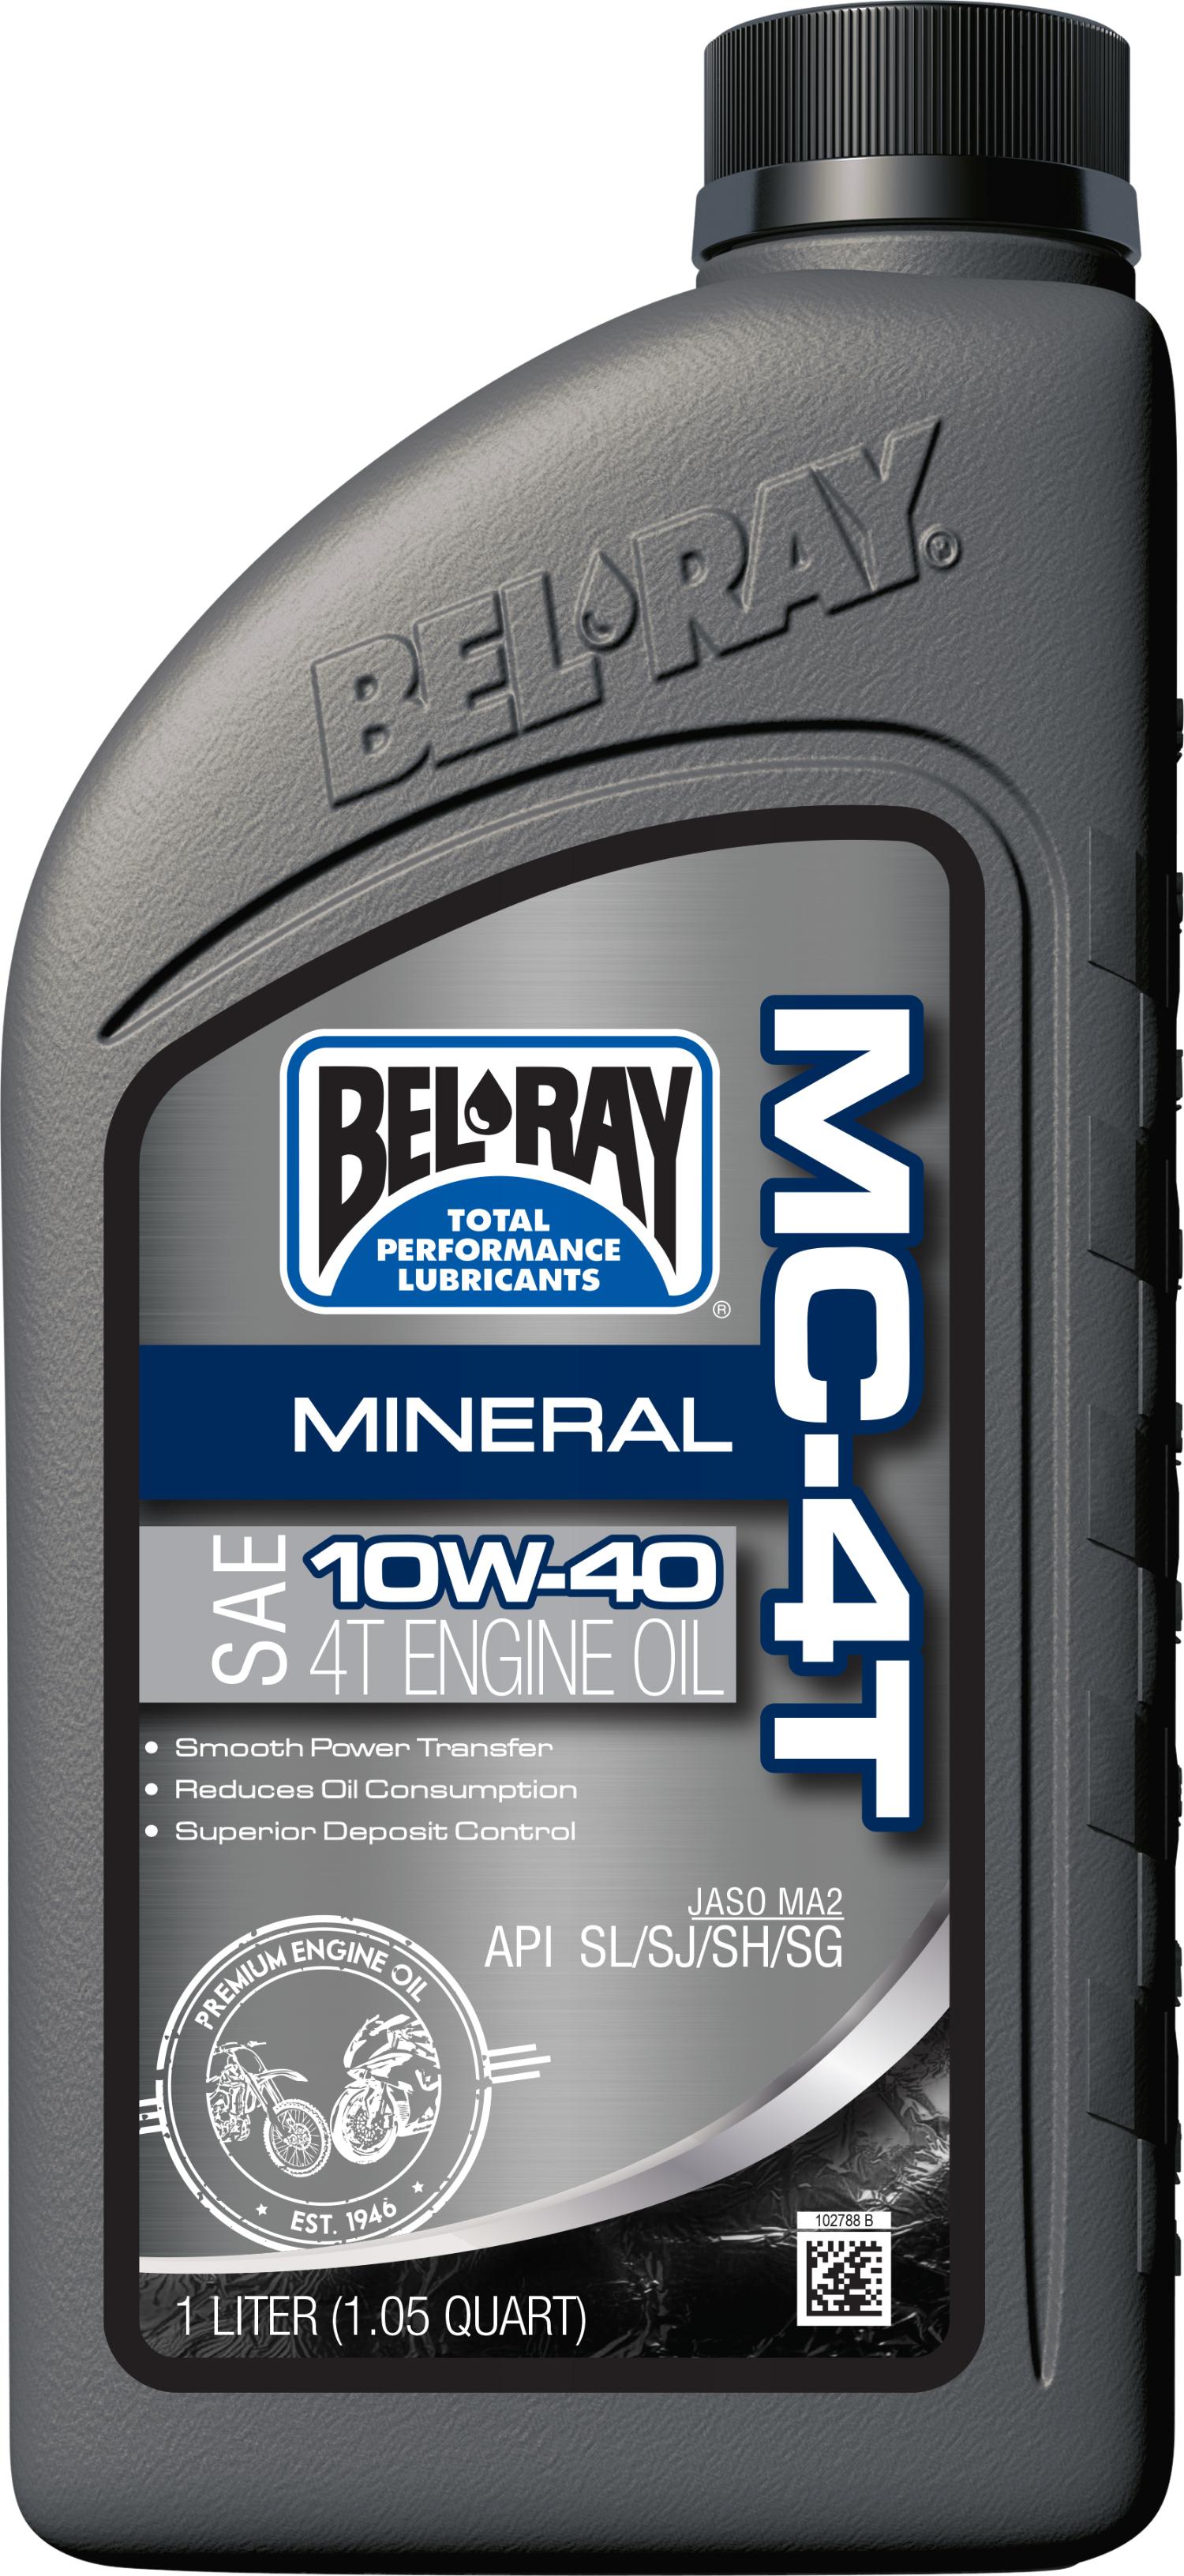 Bel-ray - Mc-4t Mineral 10w-40 1l 12/case - 99401-BT1LA